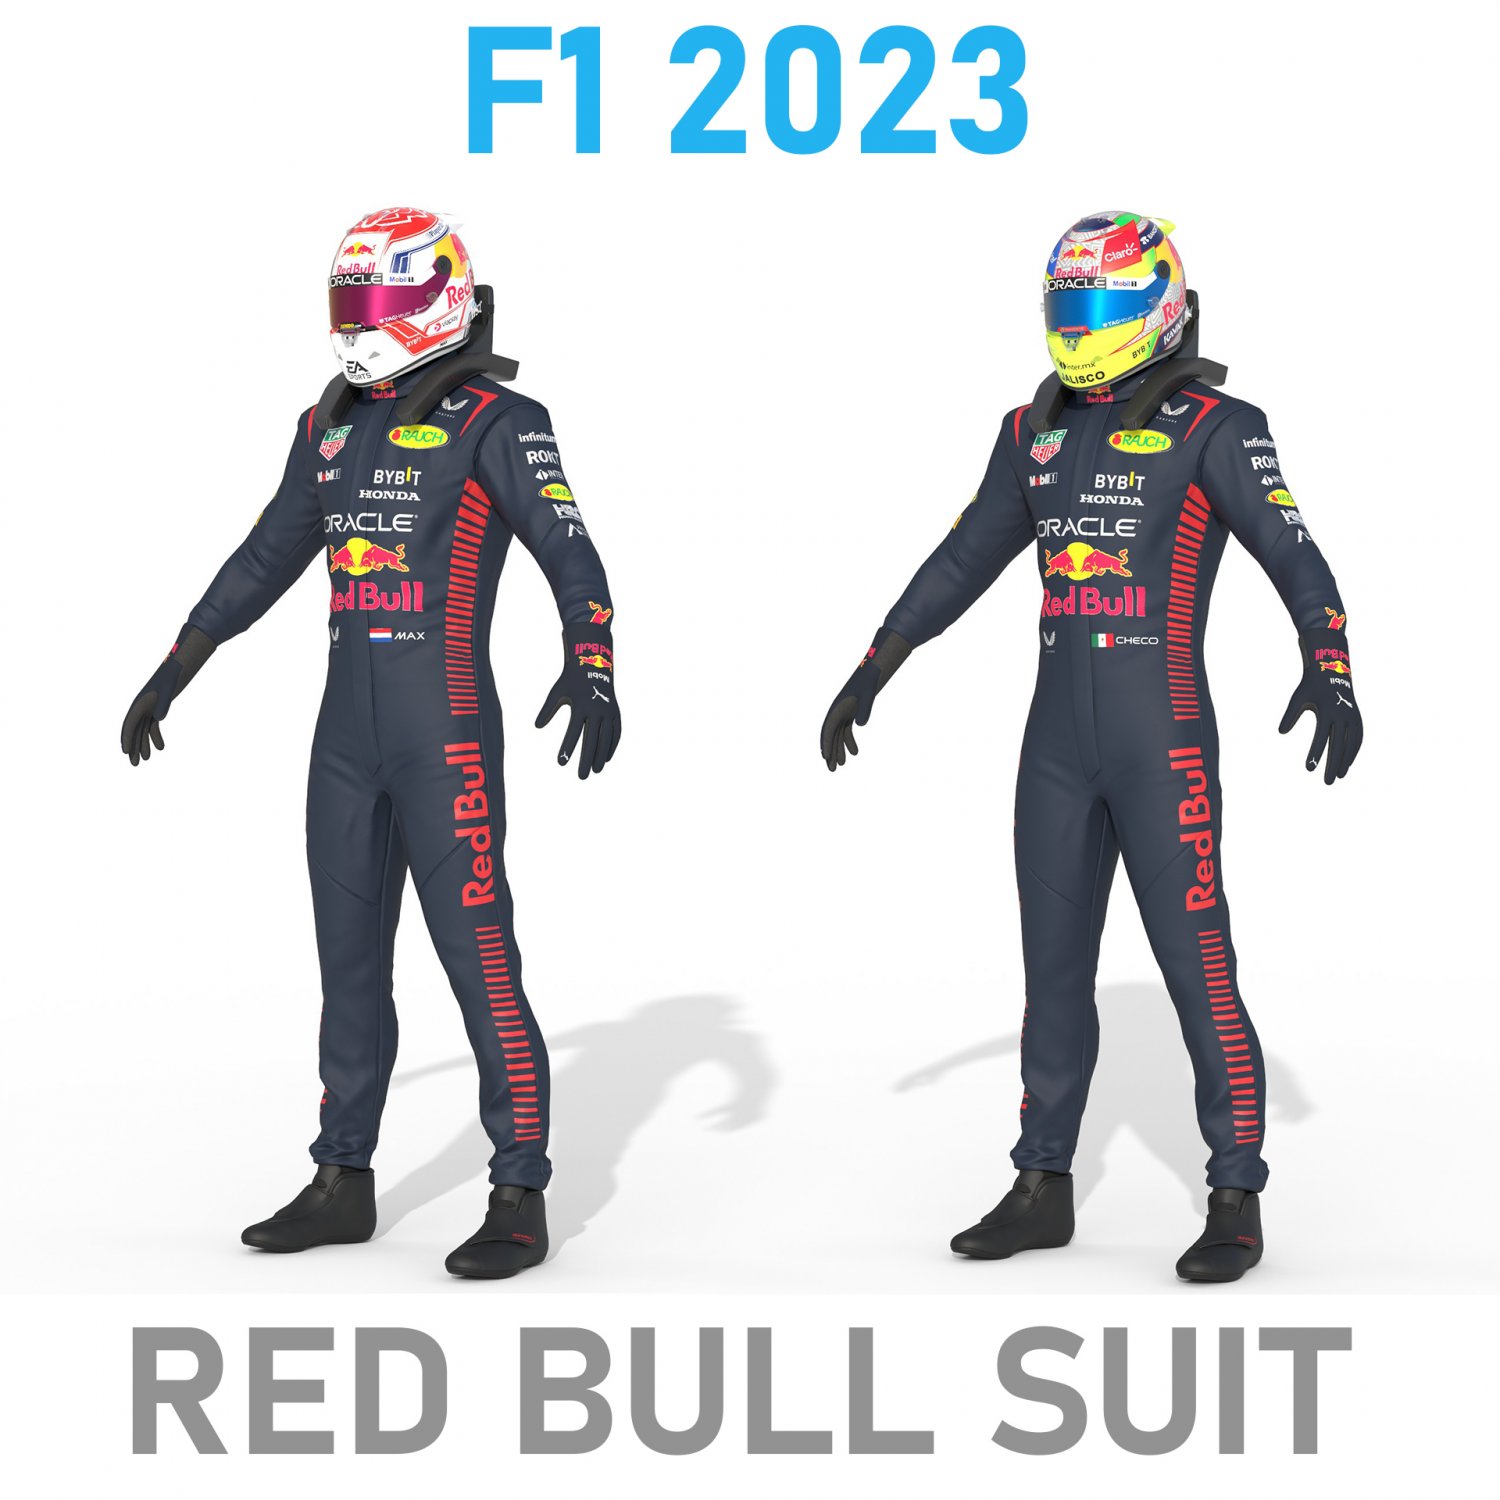 Max RedBull Suit 2023